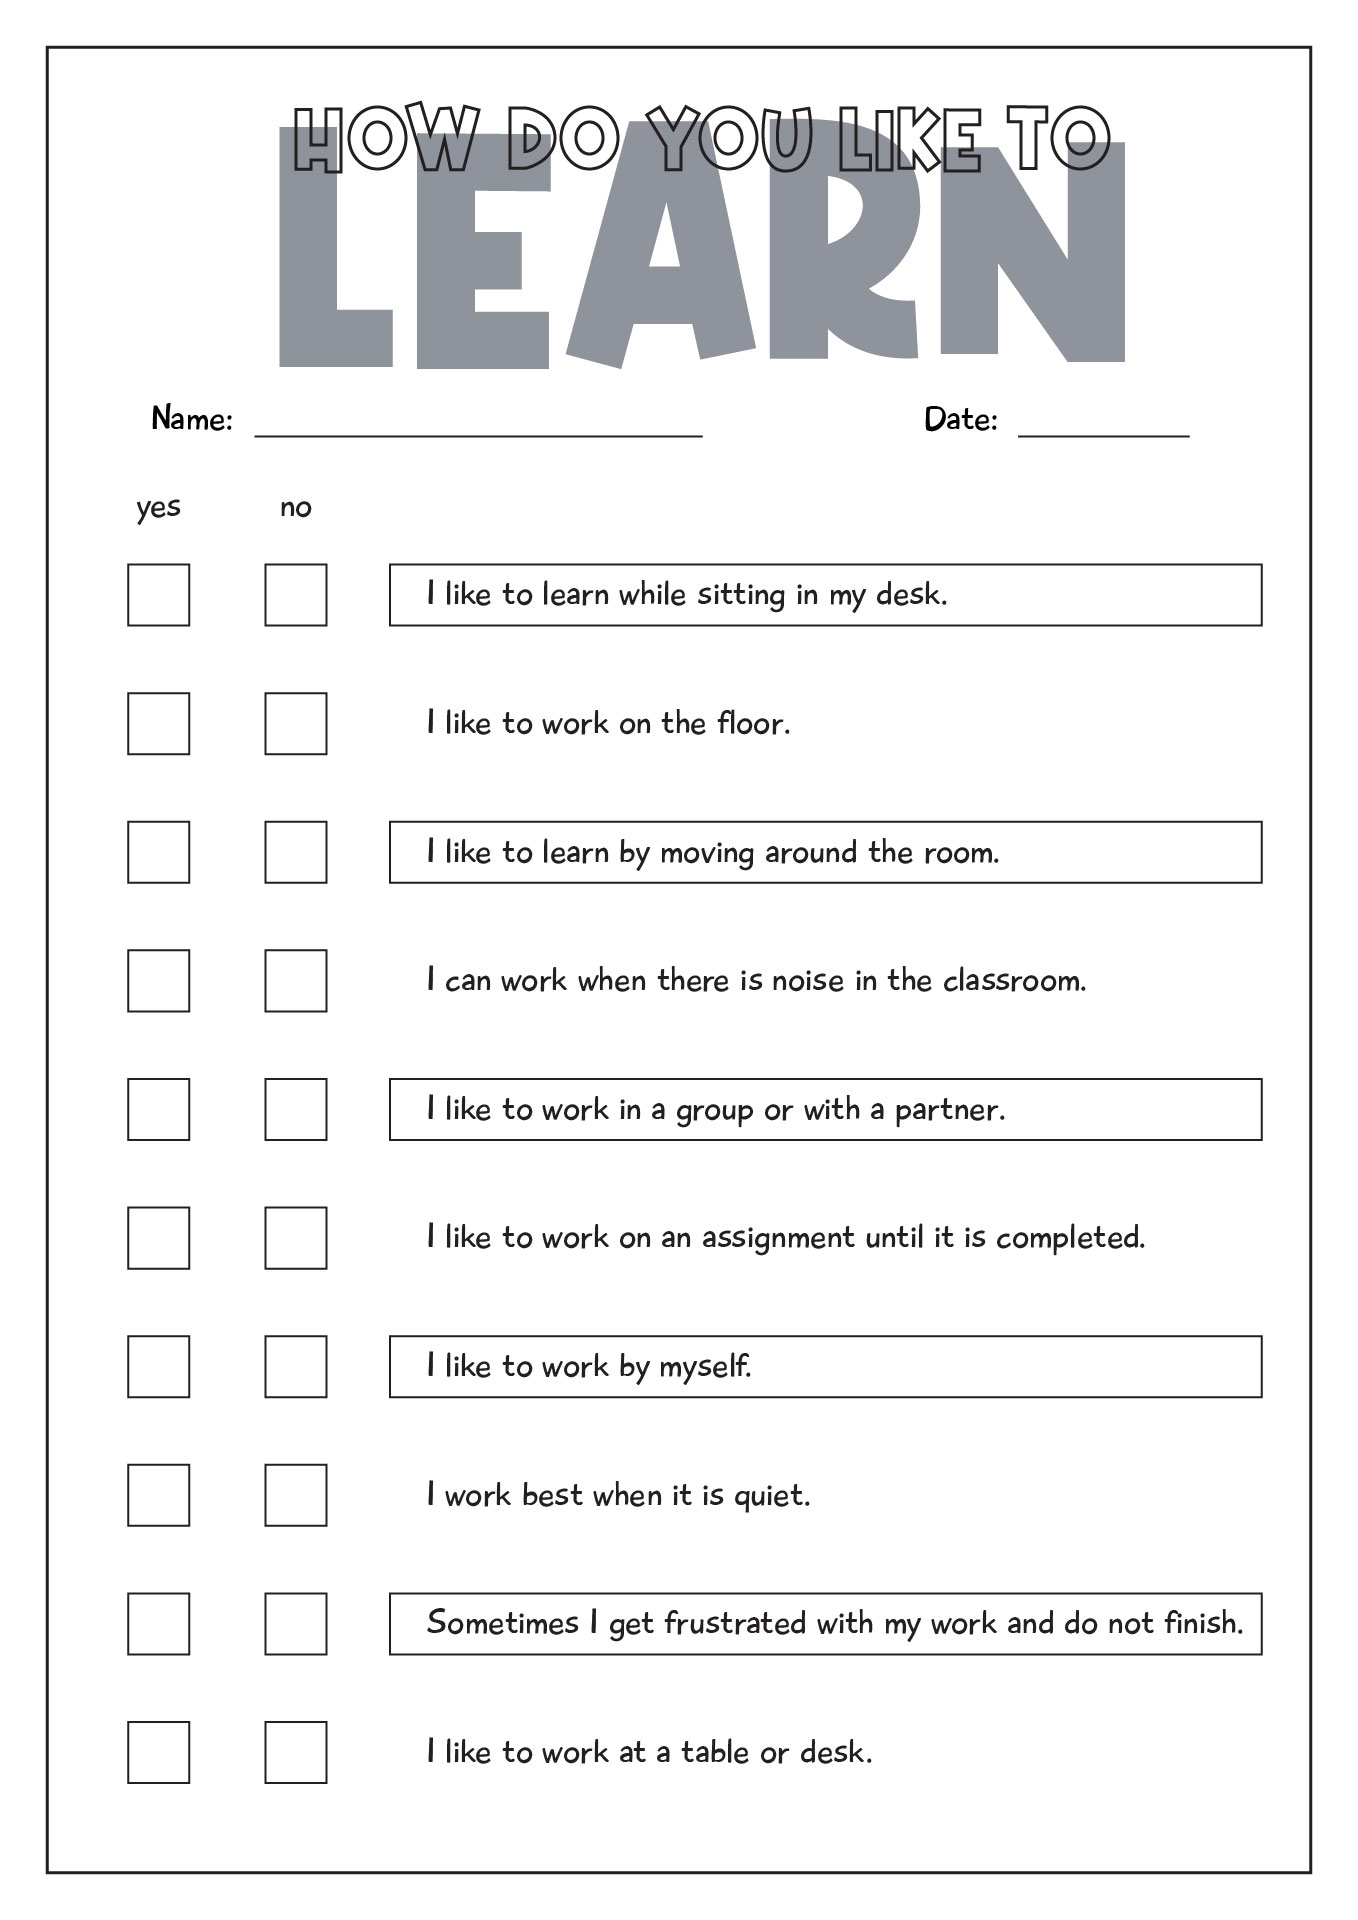 How Do You Like to Learn Survey